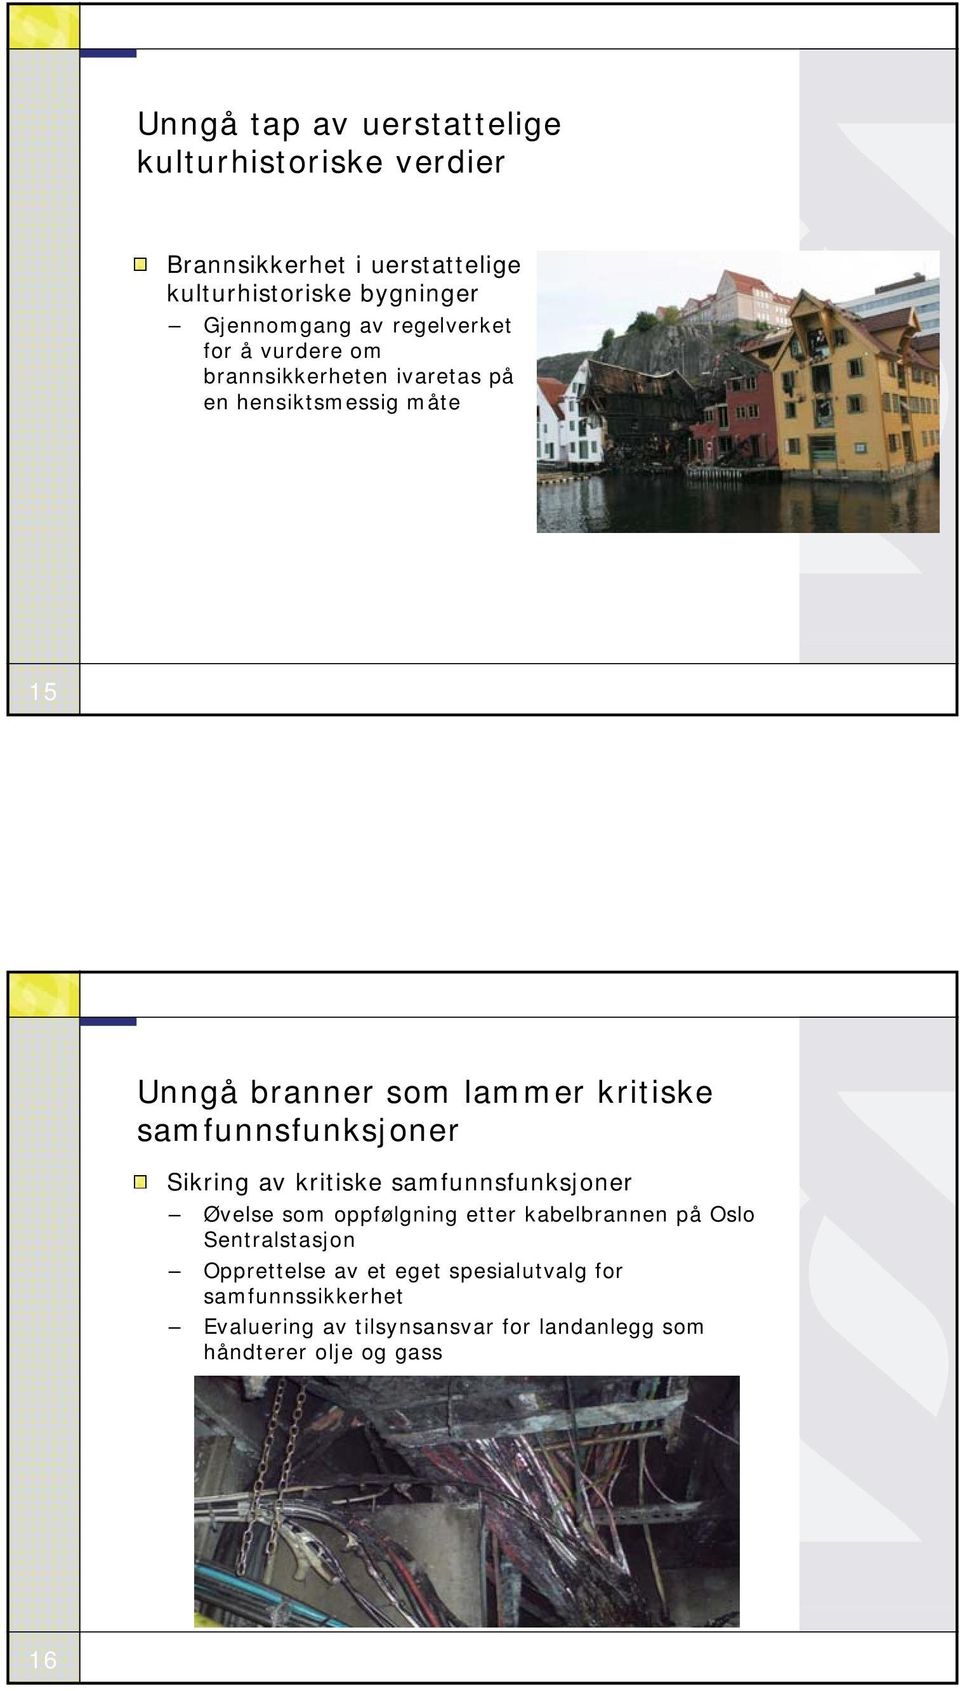 samfunnsfunksjoner Sikring av kritiske samfunnsfunksjoner Øvelse som oppfølgning etter kabelbrannen på Oslo Sentralstasjon